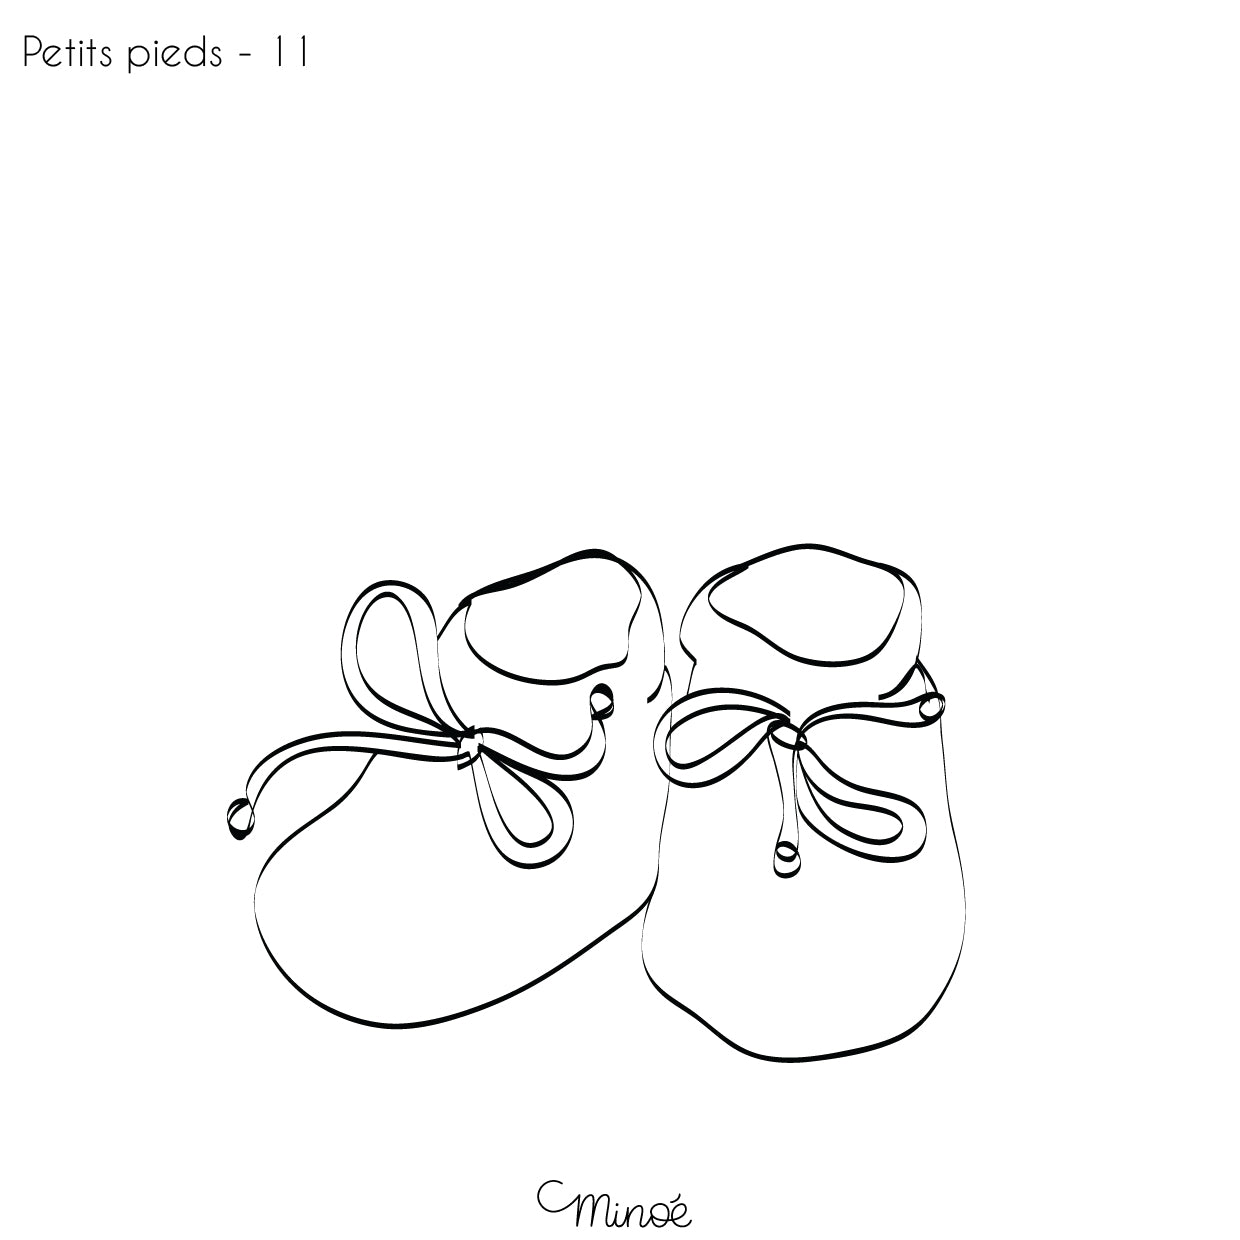 Chouette maman et petits pieds : illustration et bagagerie